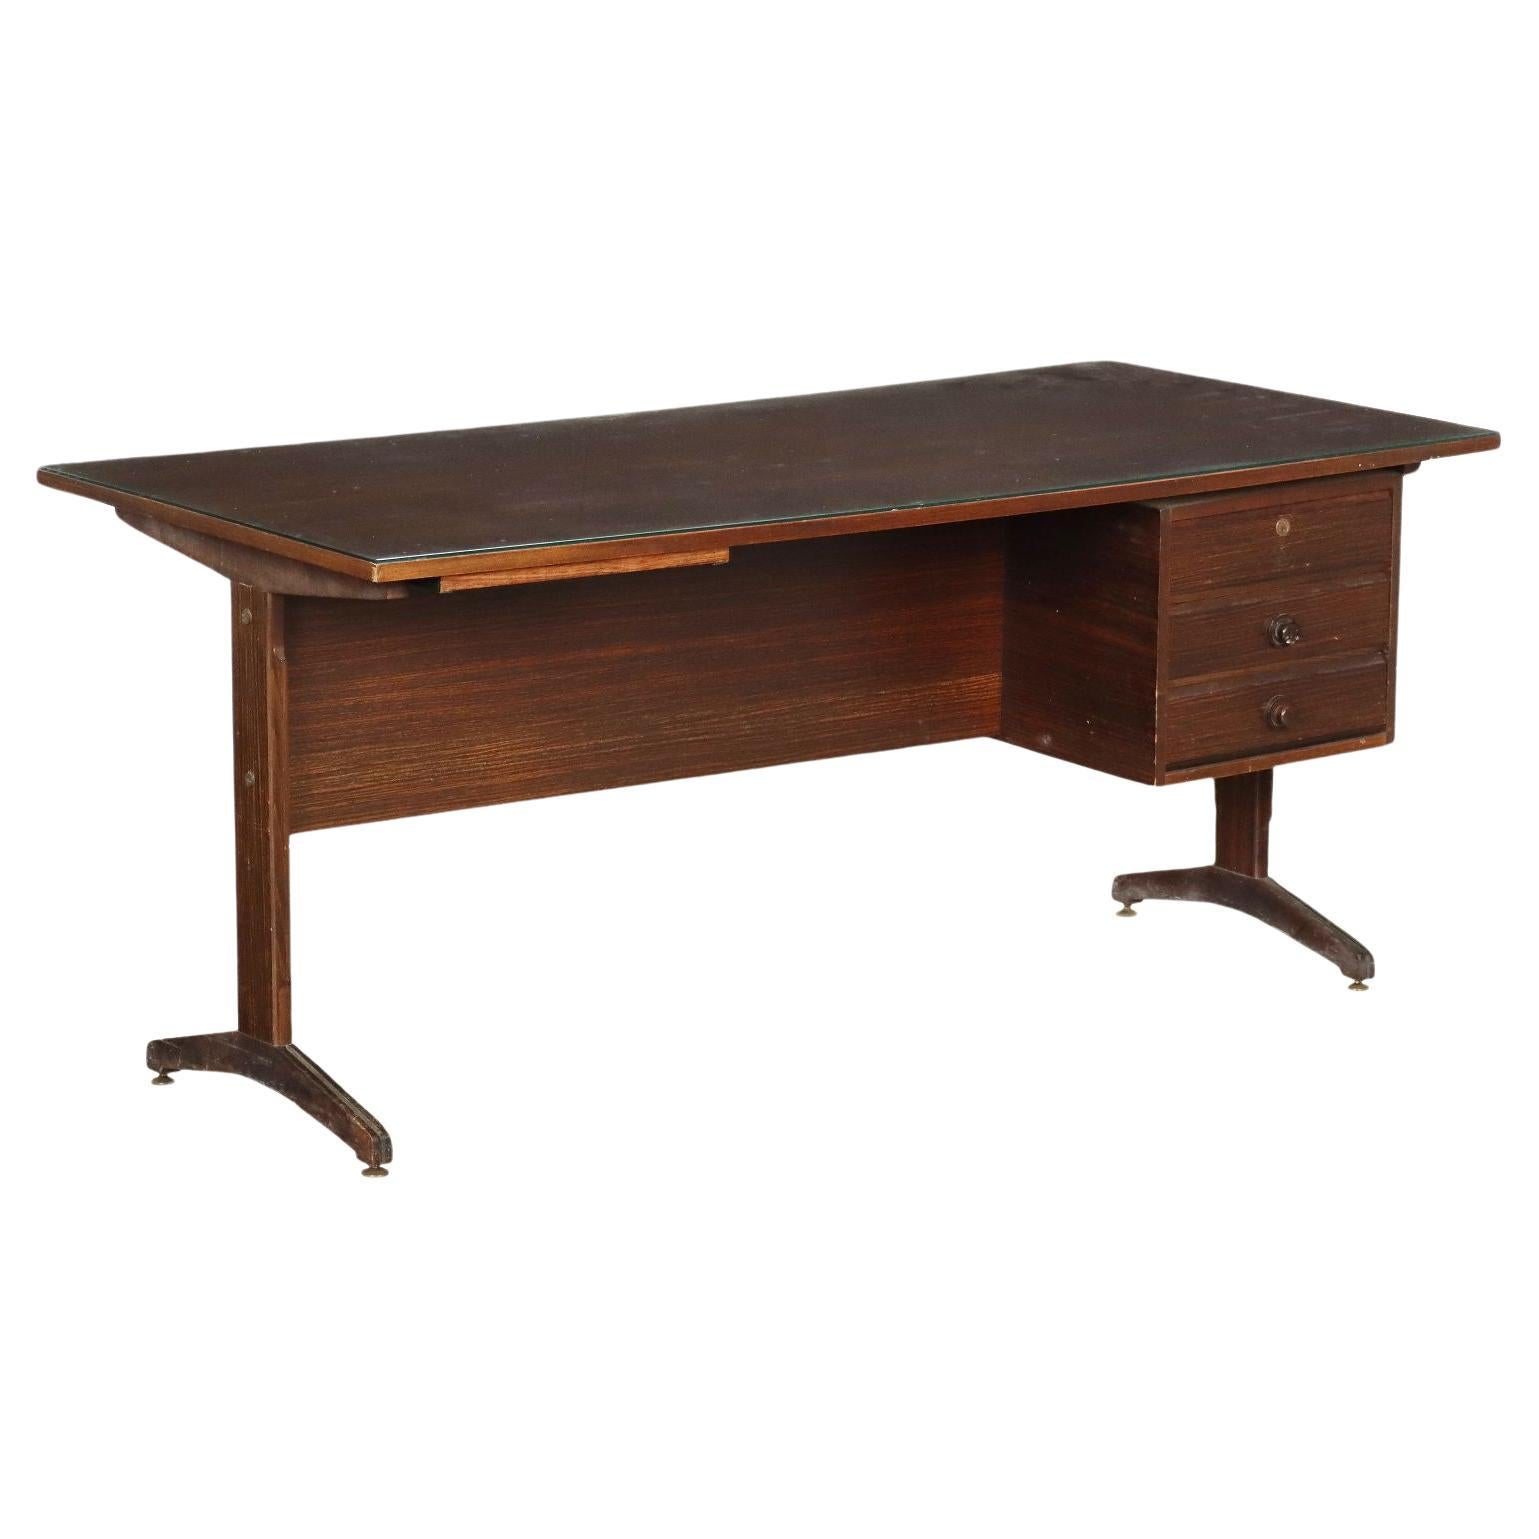 Brauner Schreibtisch aus Holz, Messing und Glas aus den 1950er/60er Jahren